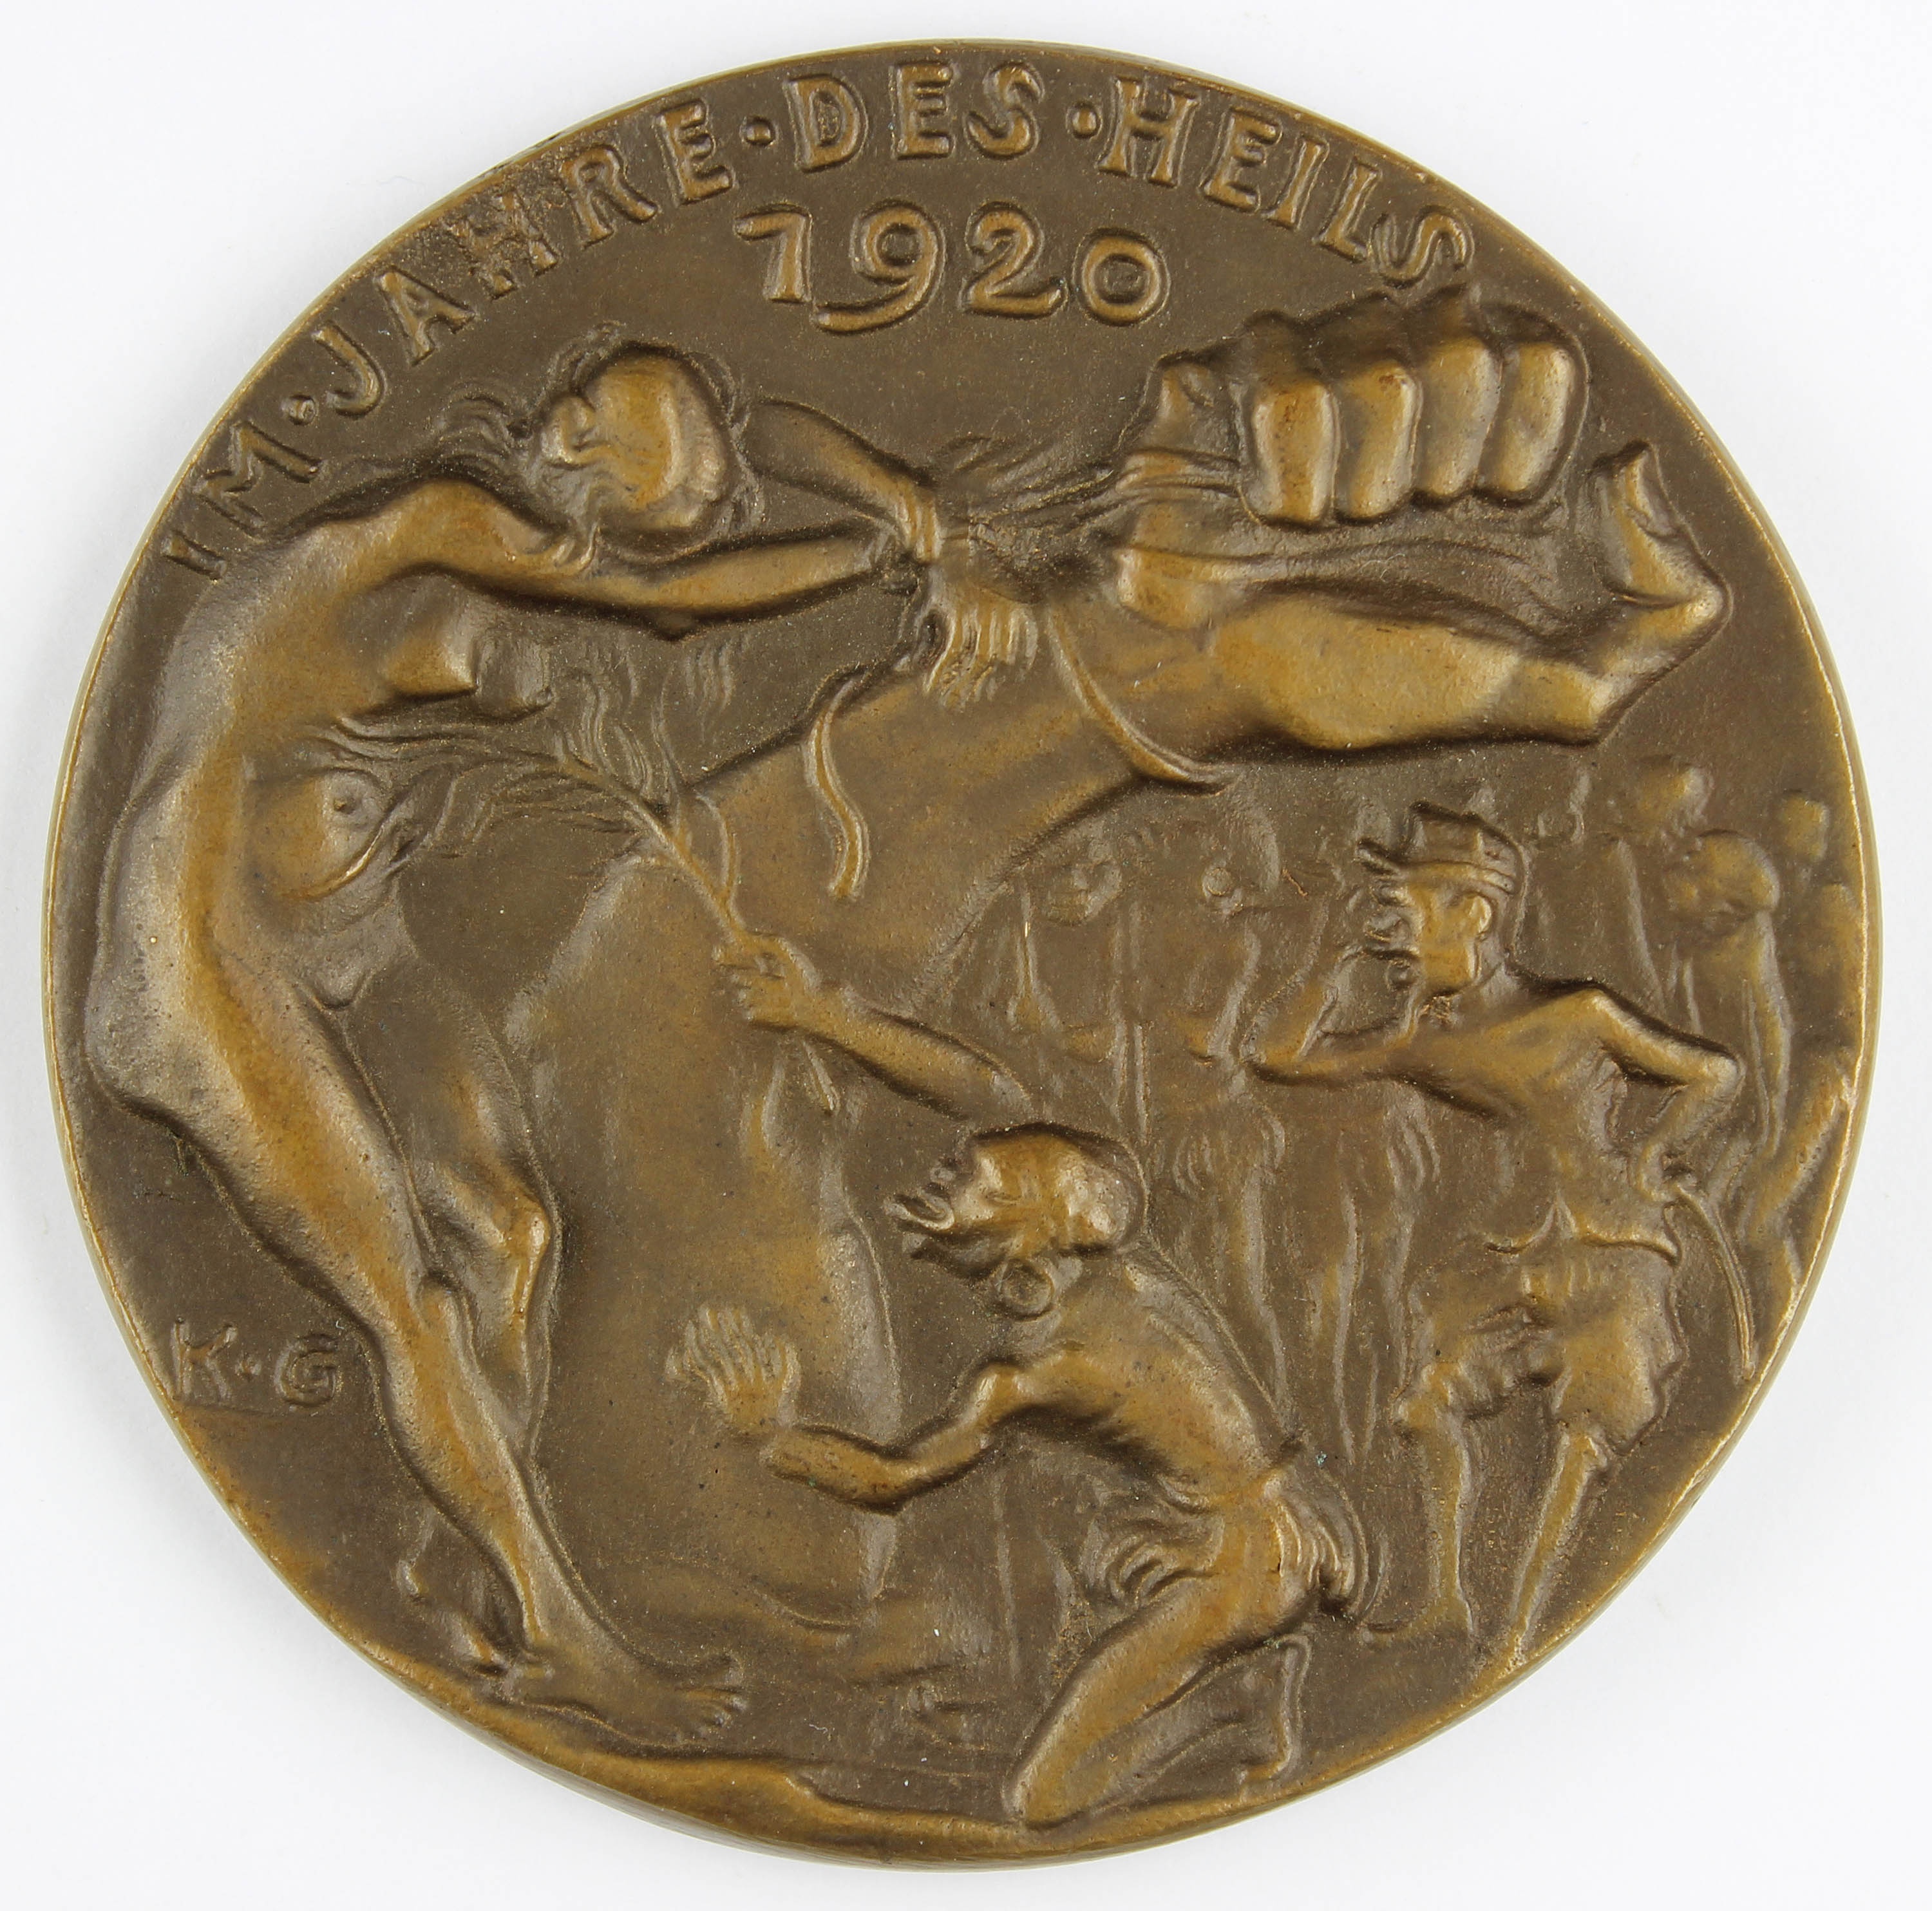 Medaille, Der Gessler Hut in der Pfalz,1920 (Museum Wolmirstedt RR-F)